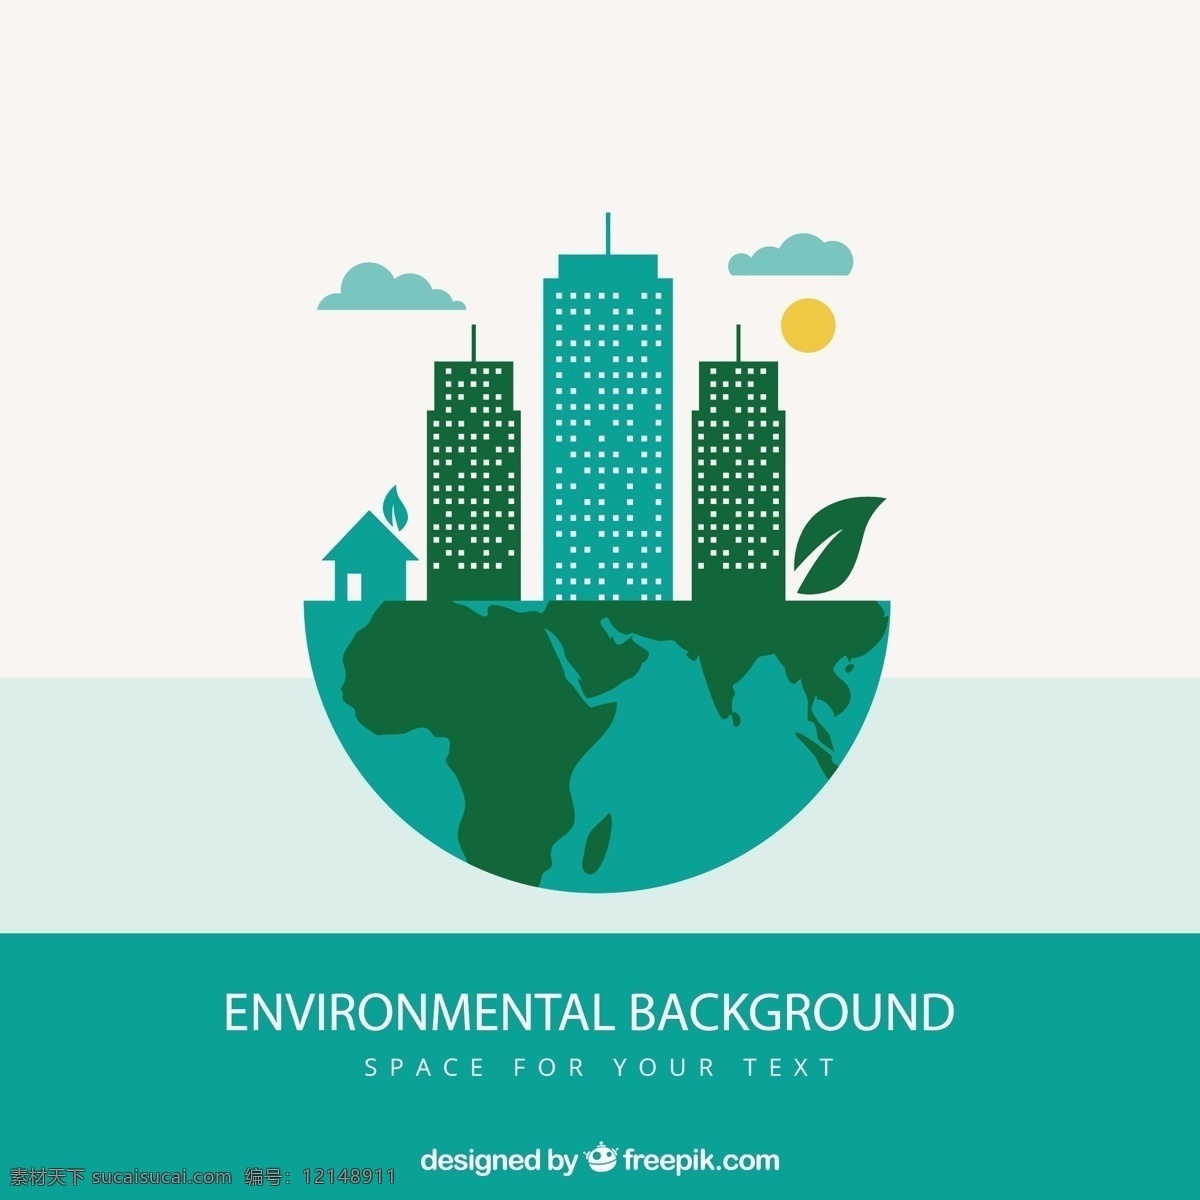 生态环境背景 背景 城市 自然 绿色 地球 生态 环境 污染